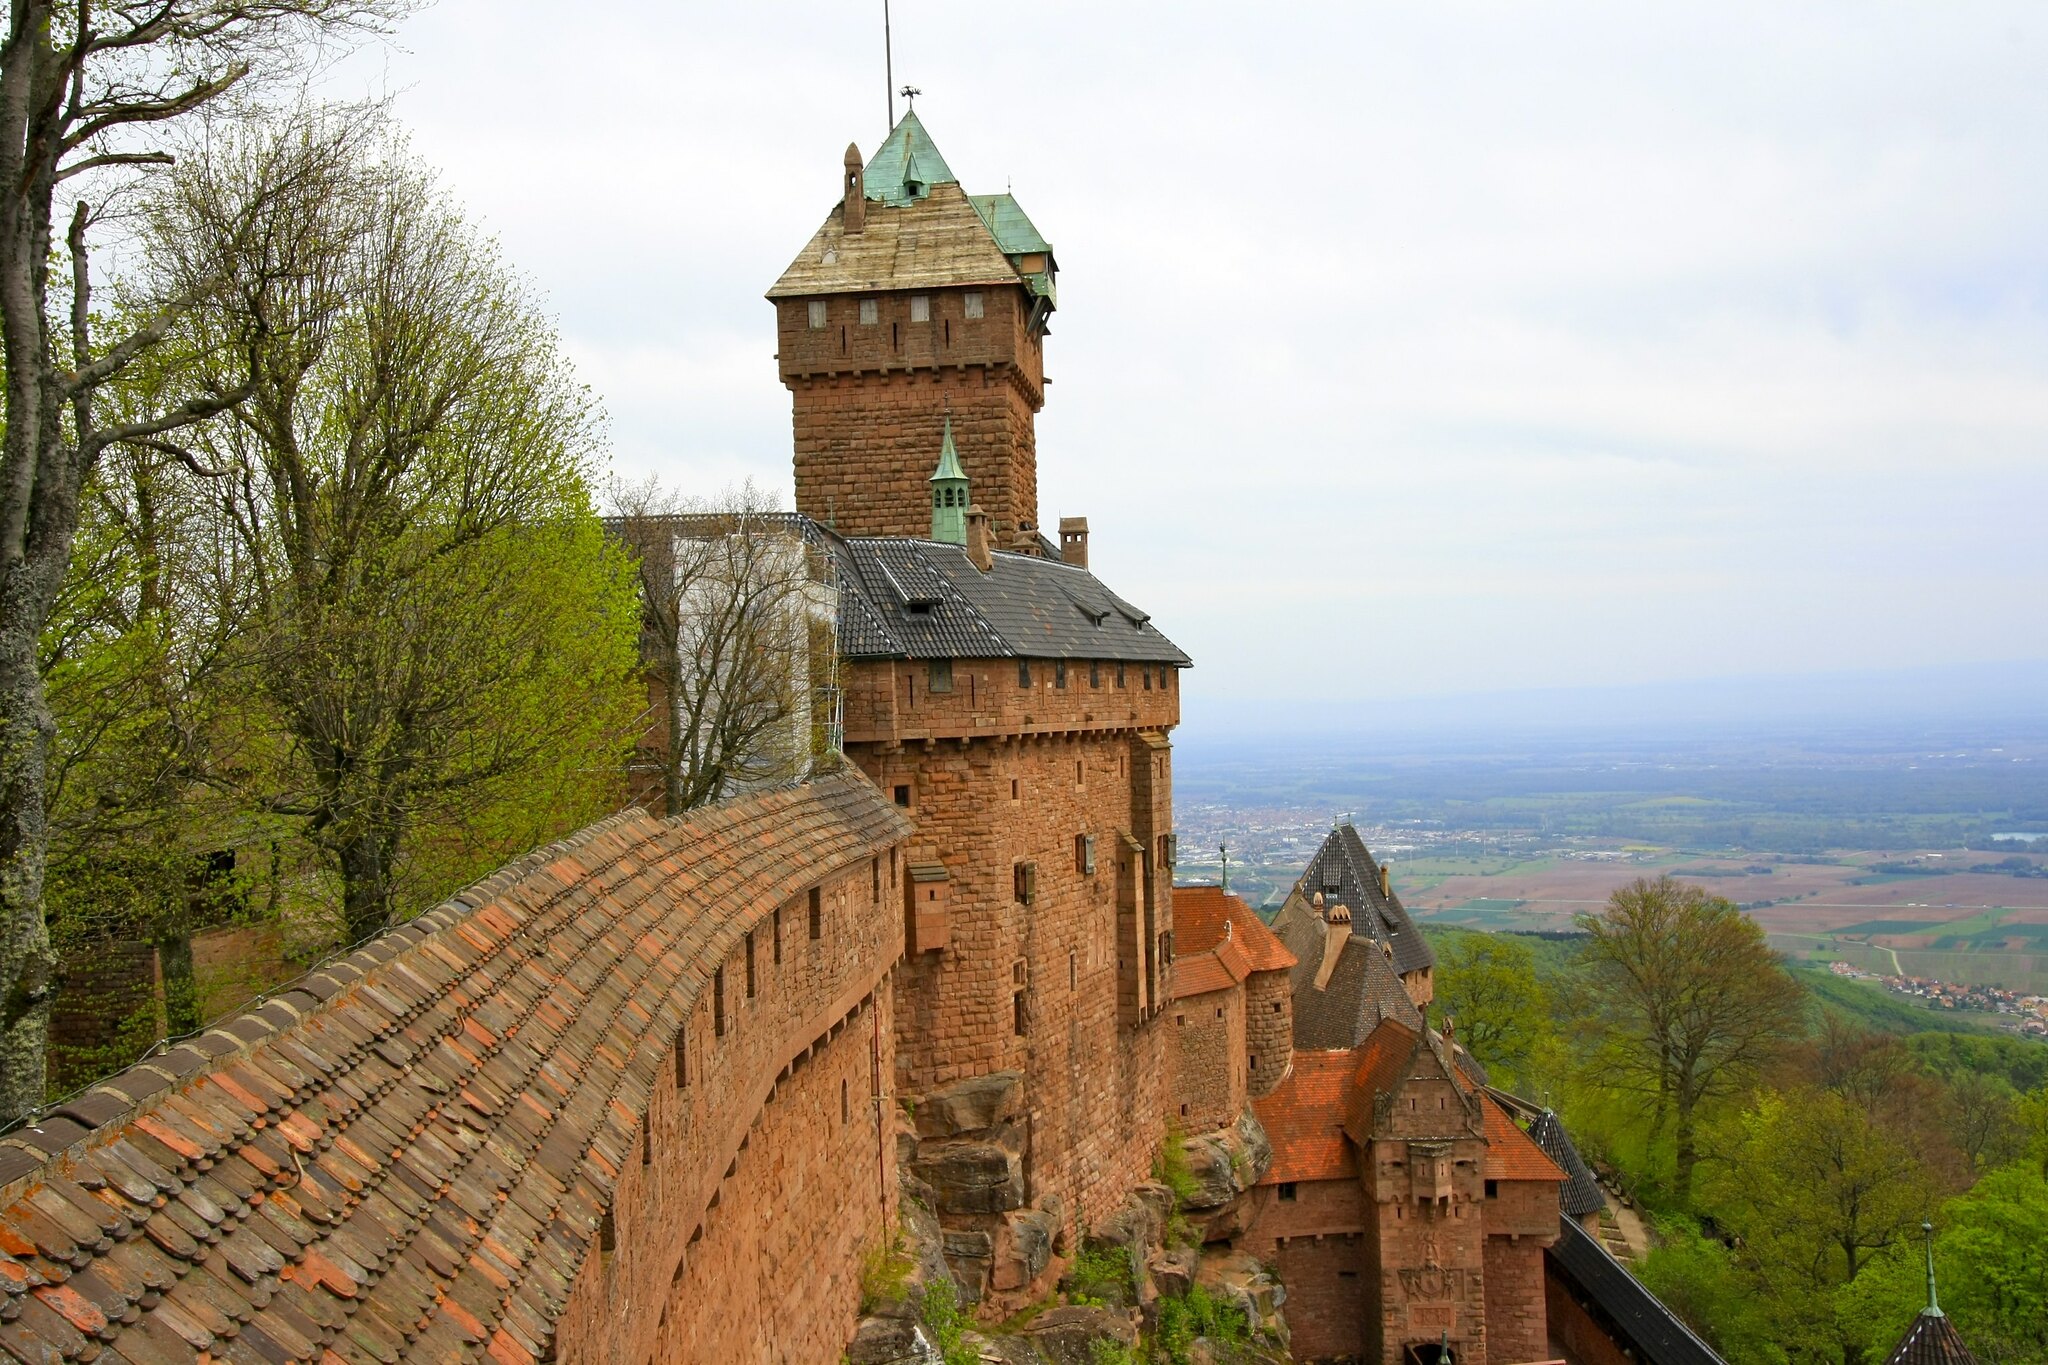 Lire la suite à propos de l’article Le château du Haut-Koenigsbourg, visite dans le Bas-Rhin